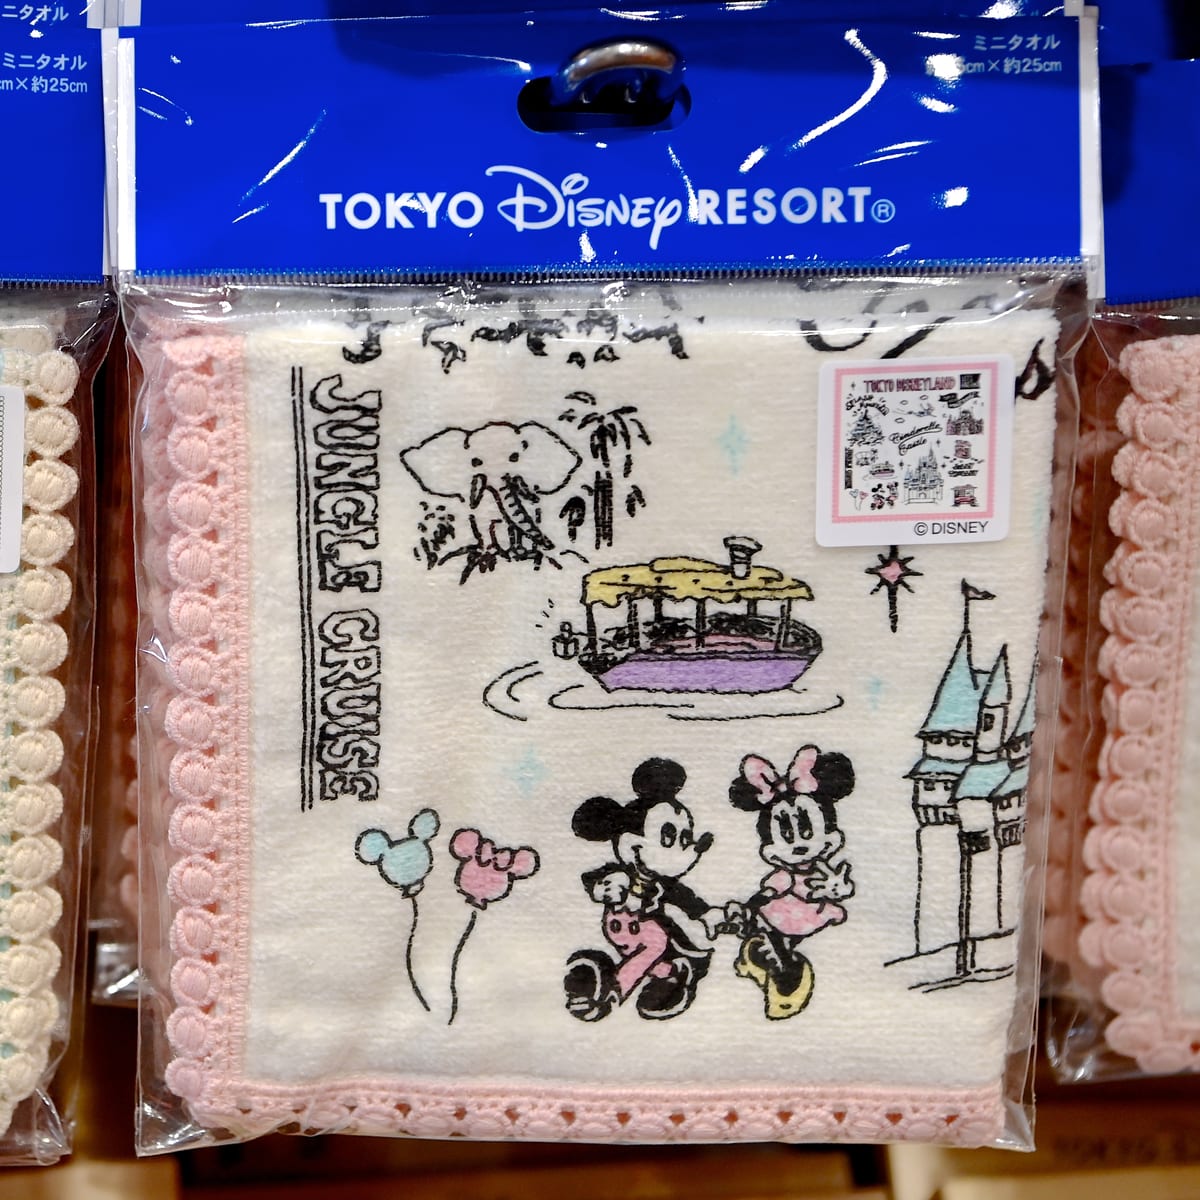 手描き風アートがかわいい 東京ディズニーランドtokyo Disney Resort Fun Map柄グッズ お土産